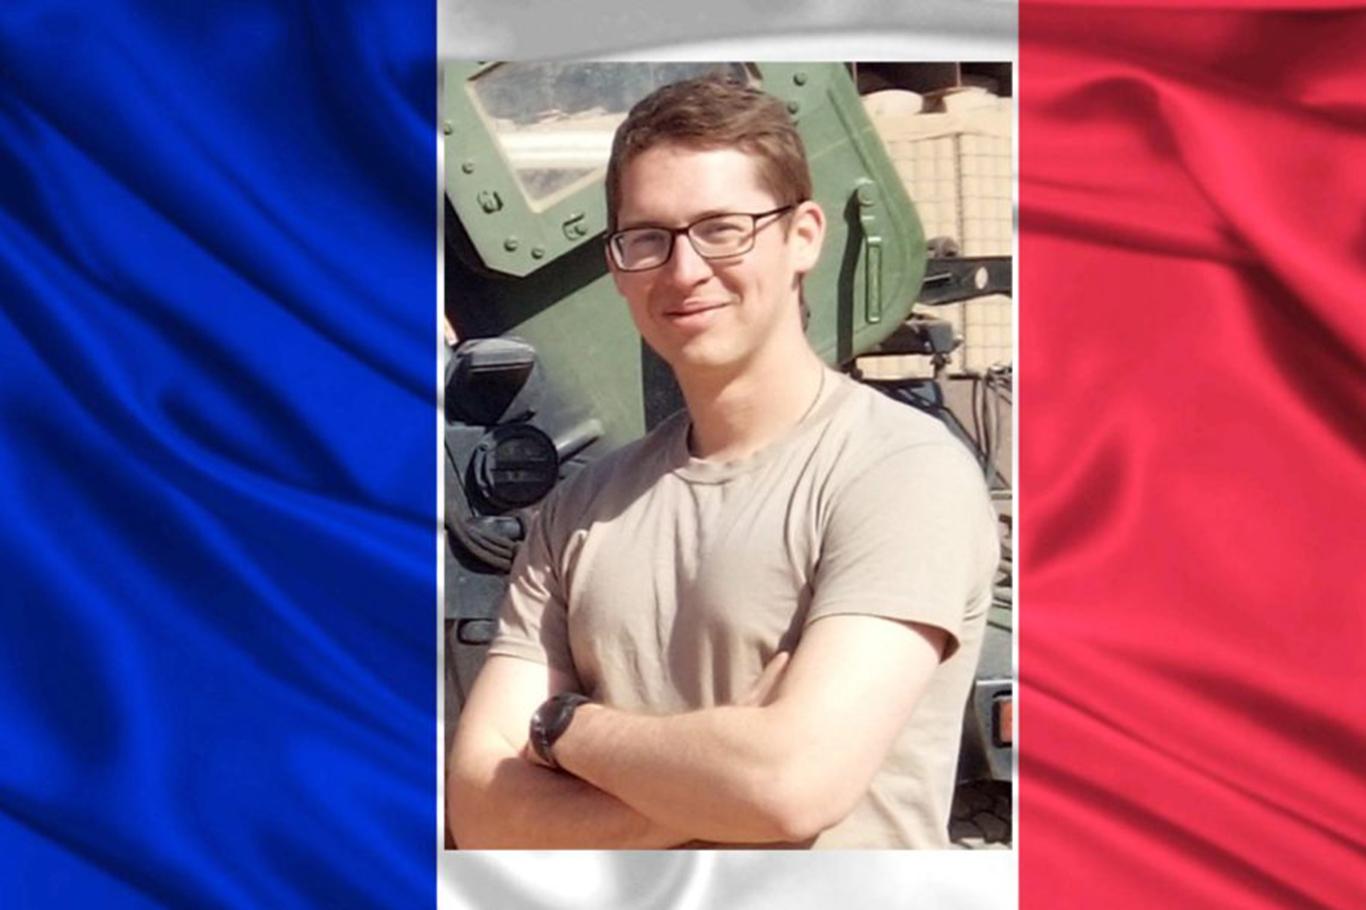 Fransız yüzbaşı Mali'de öldürüldü